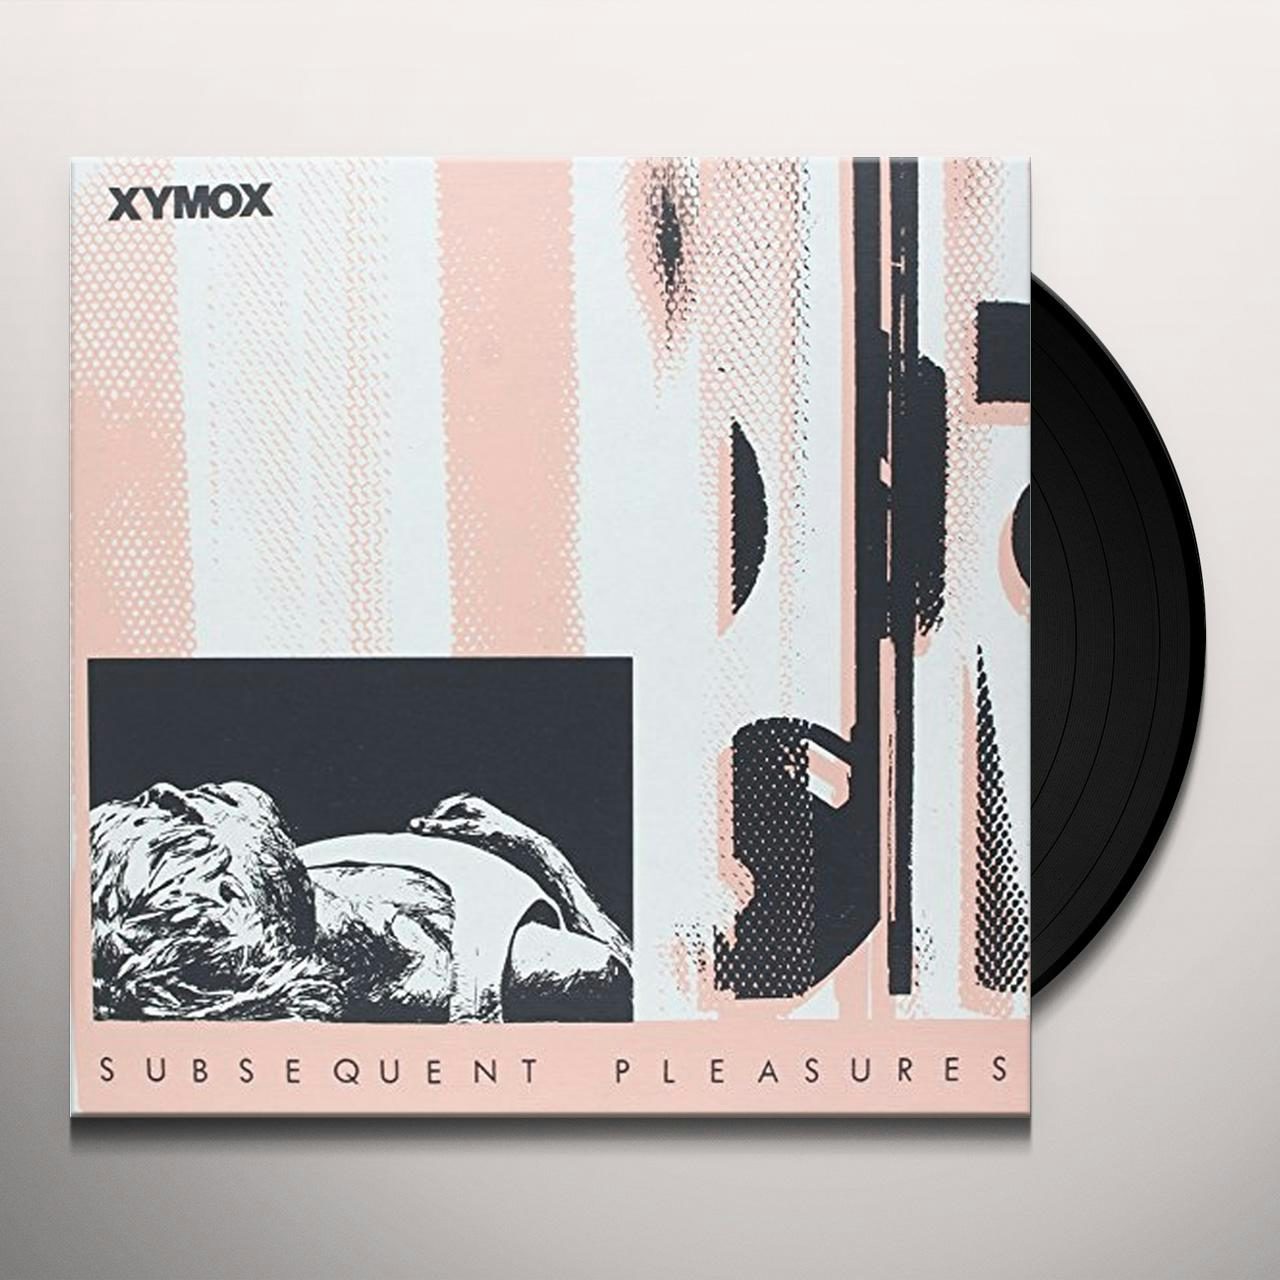 Subsequent Pleasures Vinyl Record - Xymox